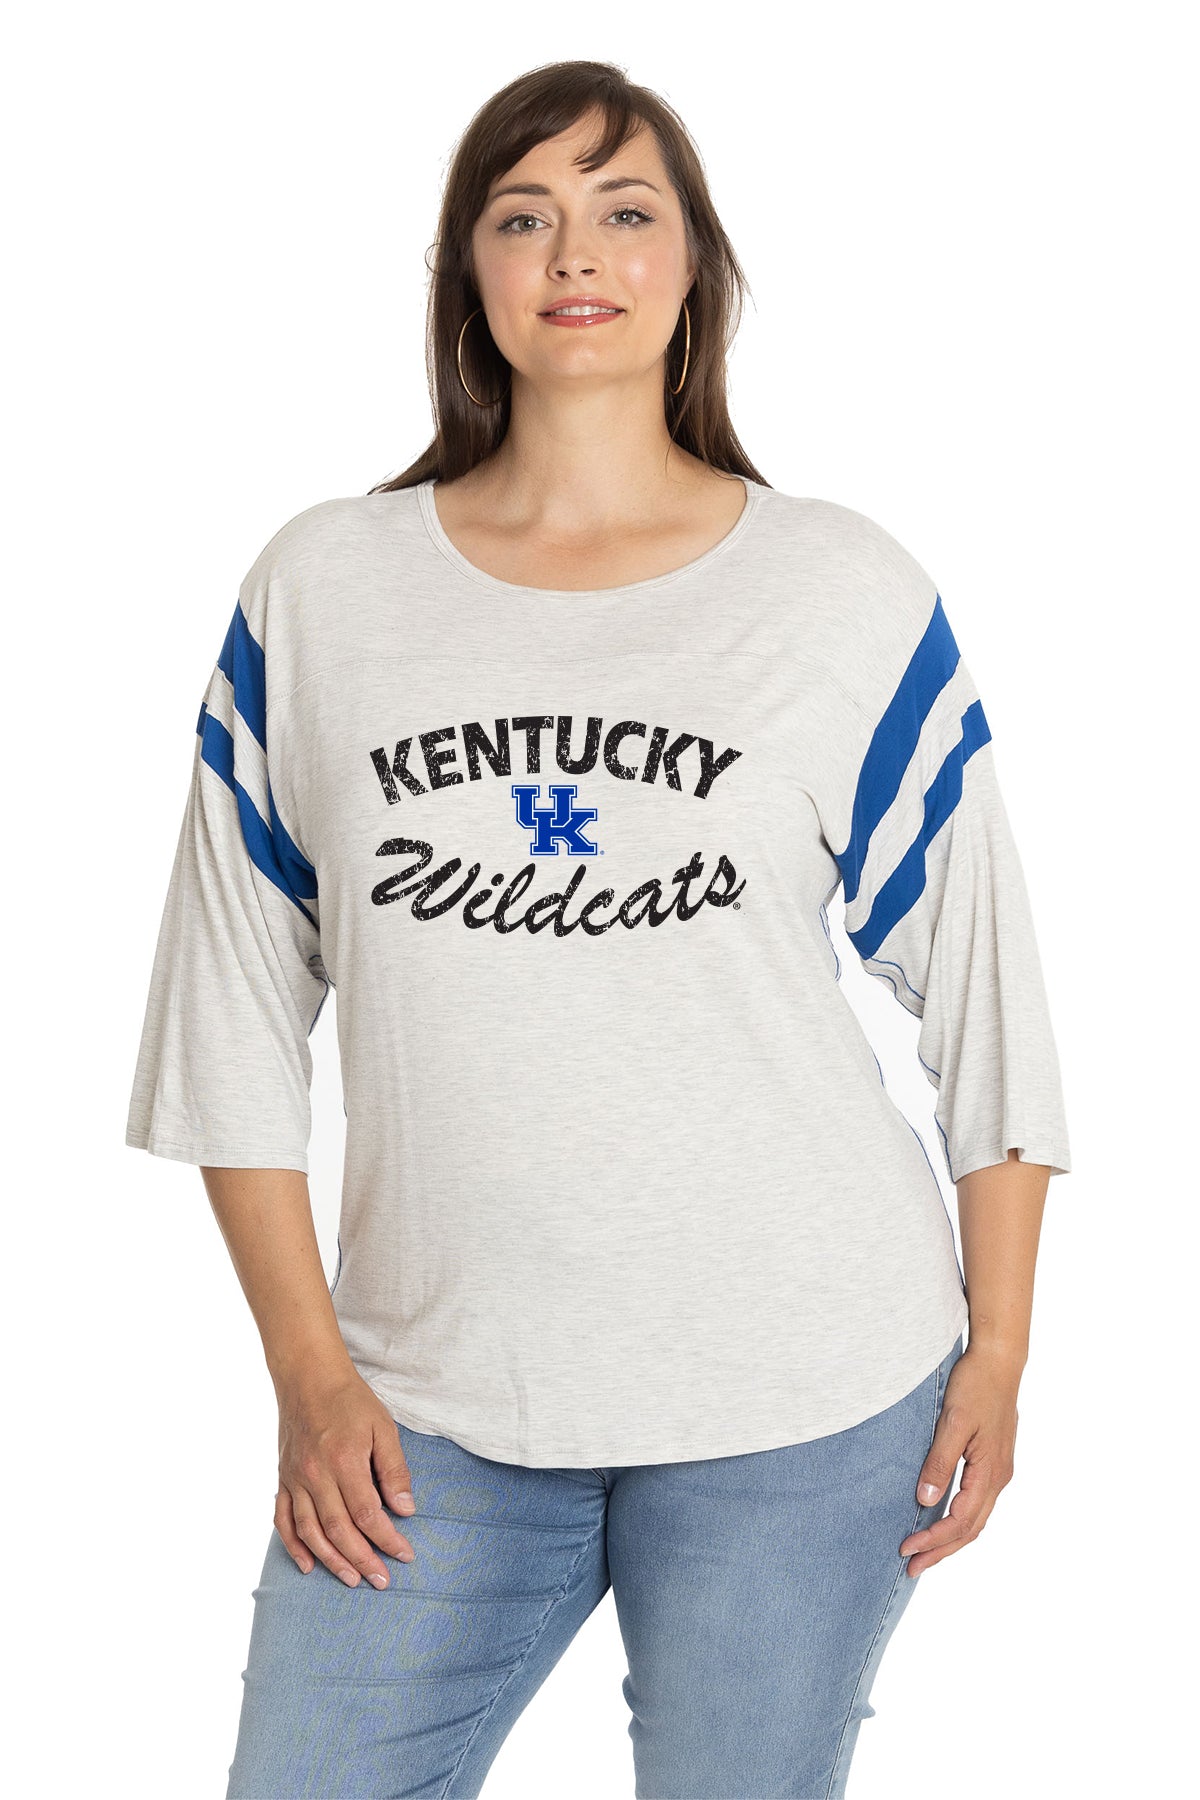 Kentucky Wildcats T-Shirts in Kentucky Wildcats Team Shop